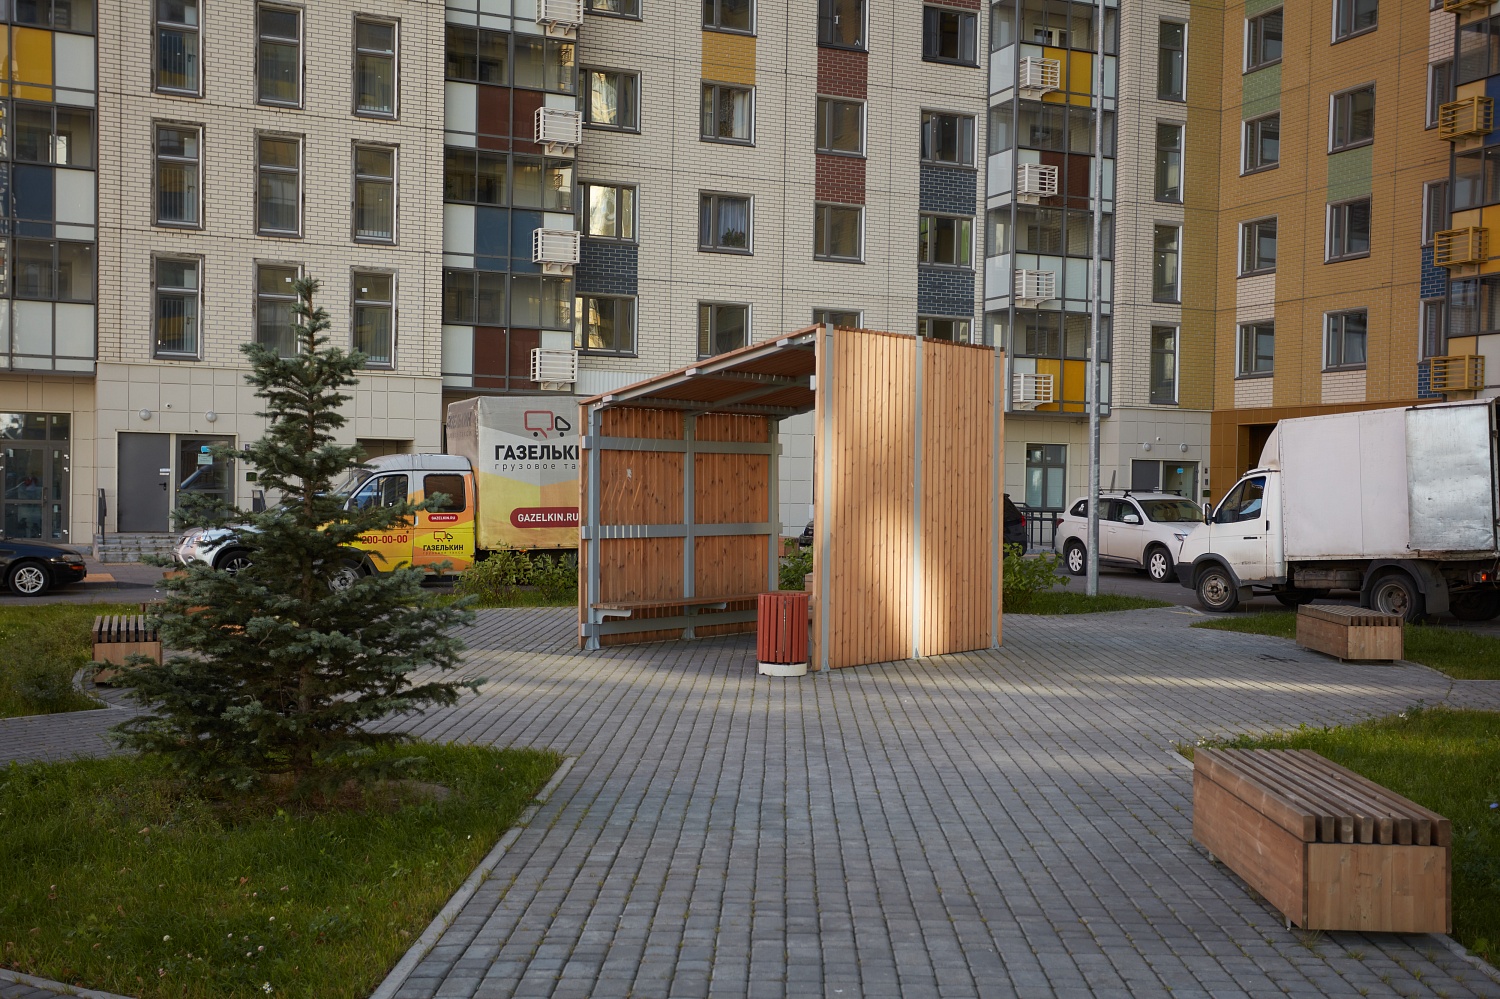 Жилые дома ул. Вертолетчиков, Москва (2020 год)